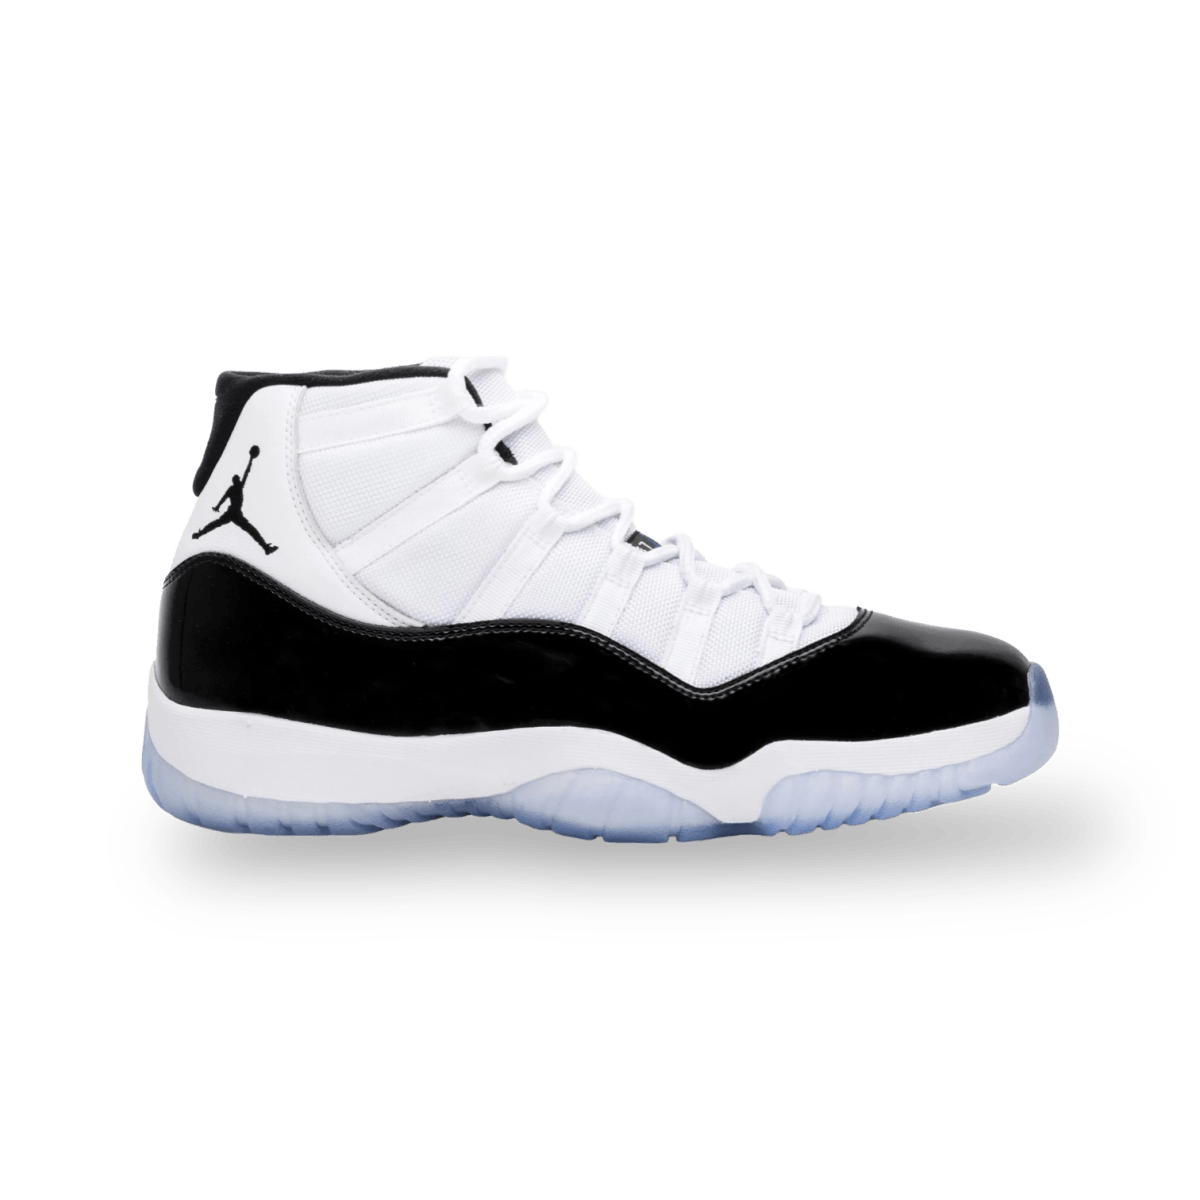 Jordan 11 Retro Concord (2018) - High Sneaker - Jawns on Fire Sneakers & Streetwear